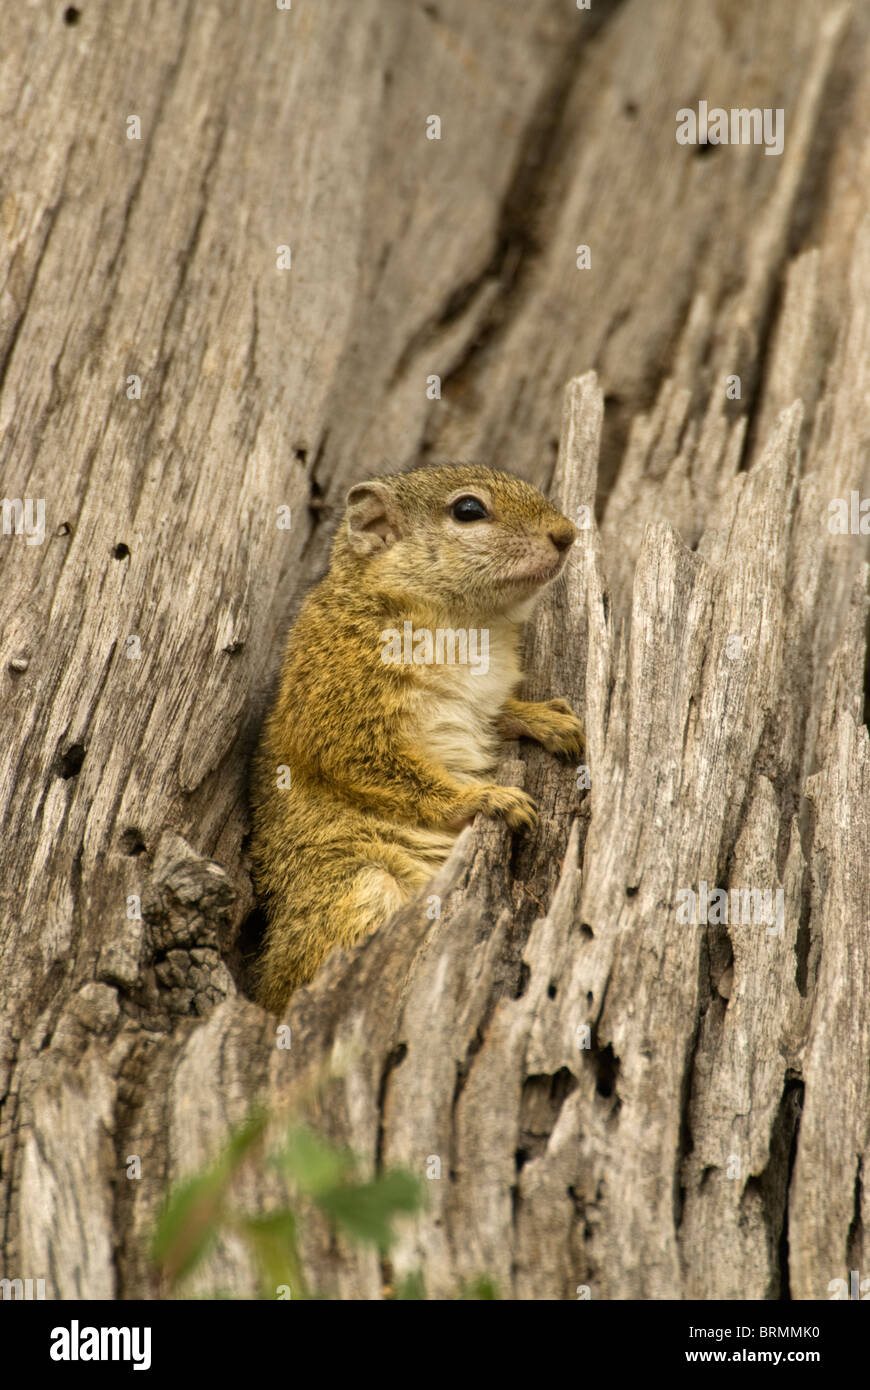 Baum-Eichhörnchen in dicken trockenen Baumstumpf sitzend Stockfoto